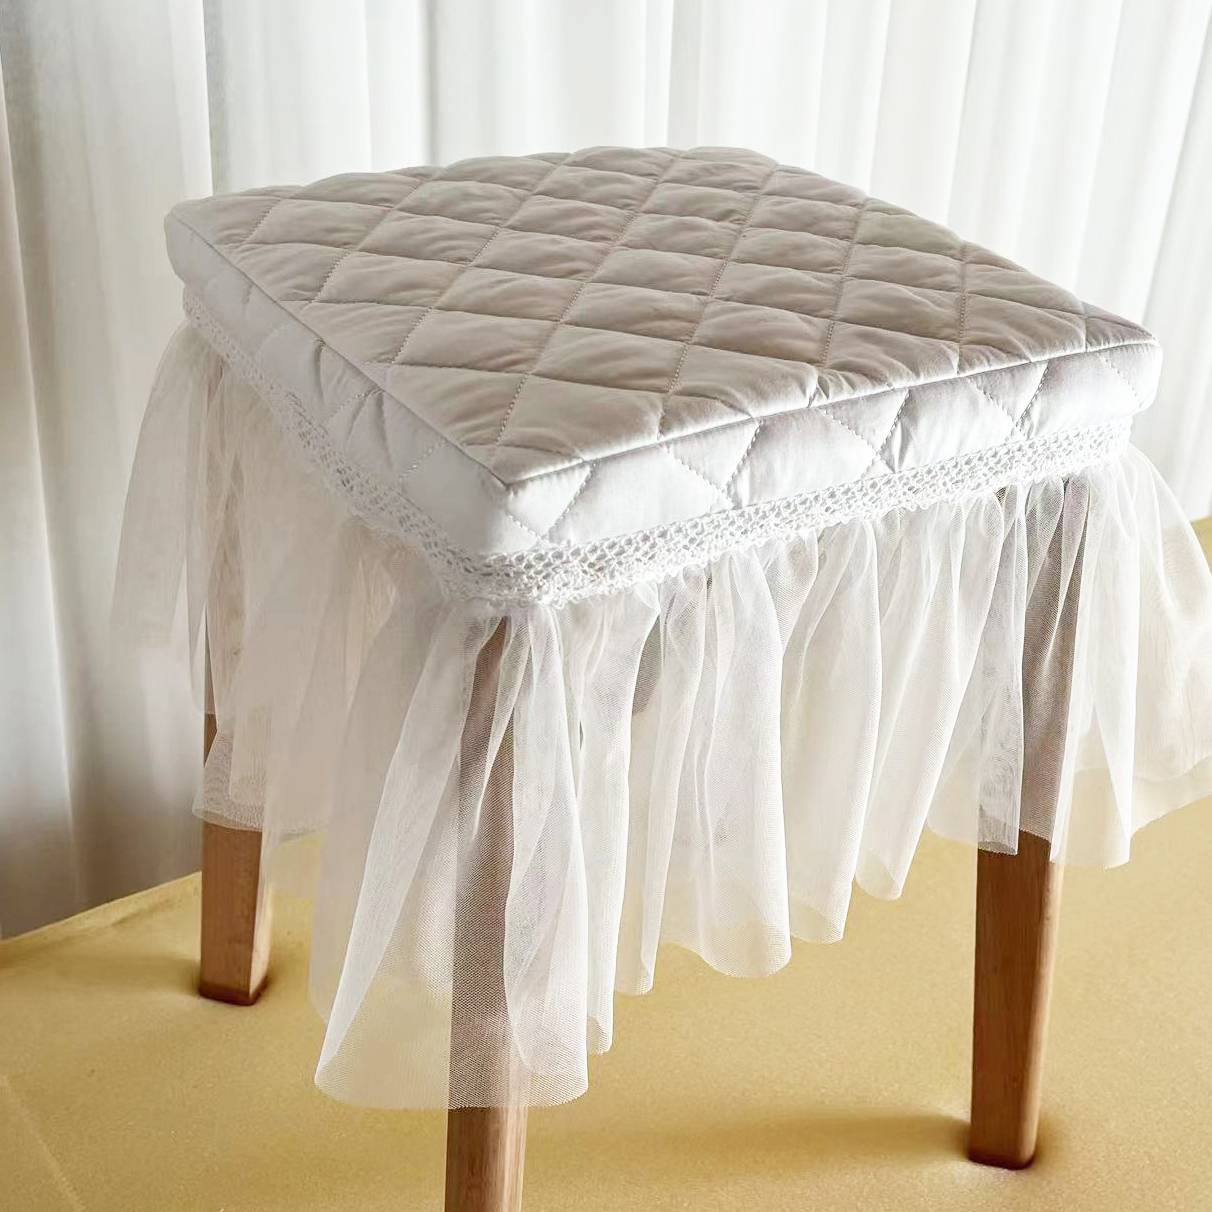 本白色简约全棉+纱长方形凳子套 桌子套 茶几套 可定制各种规格